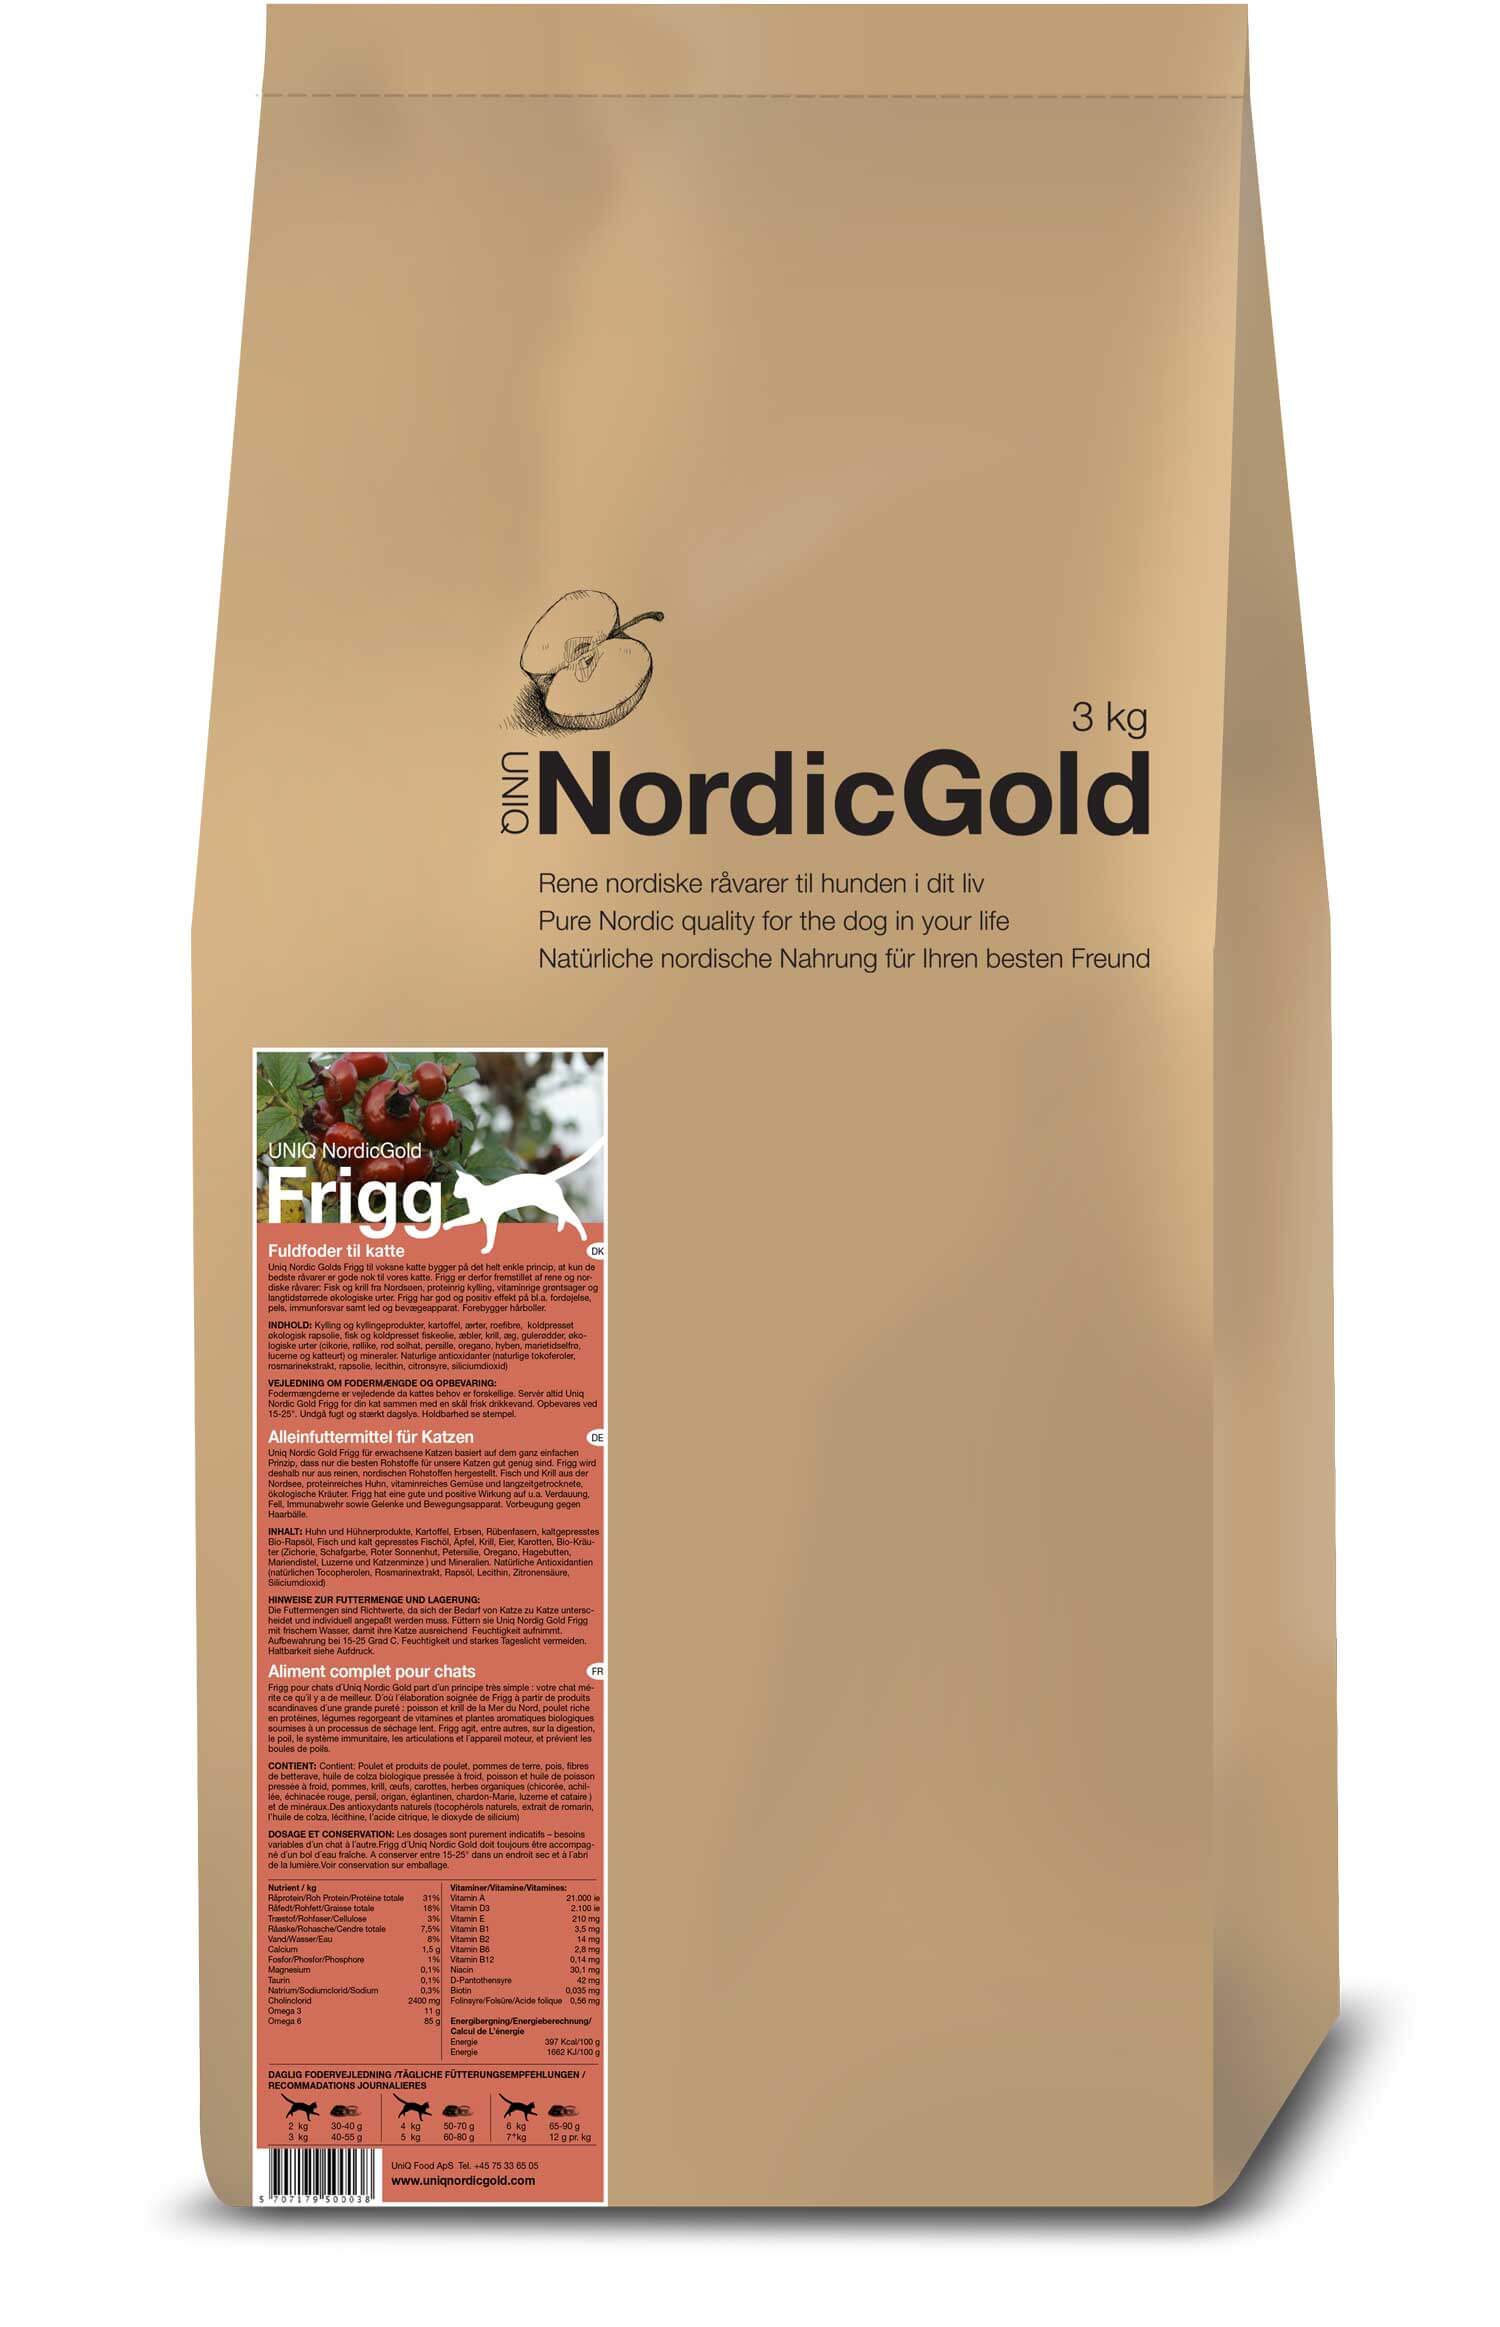 UniQ - Nordic Gold Frigg 3 kg - (160) - Kjæledyr og utstyr